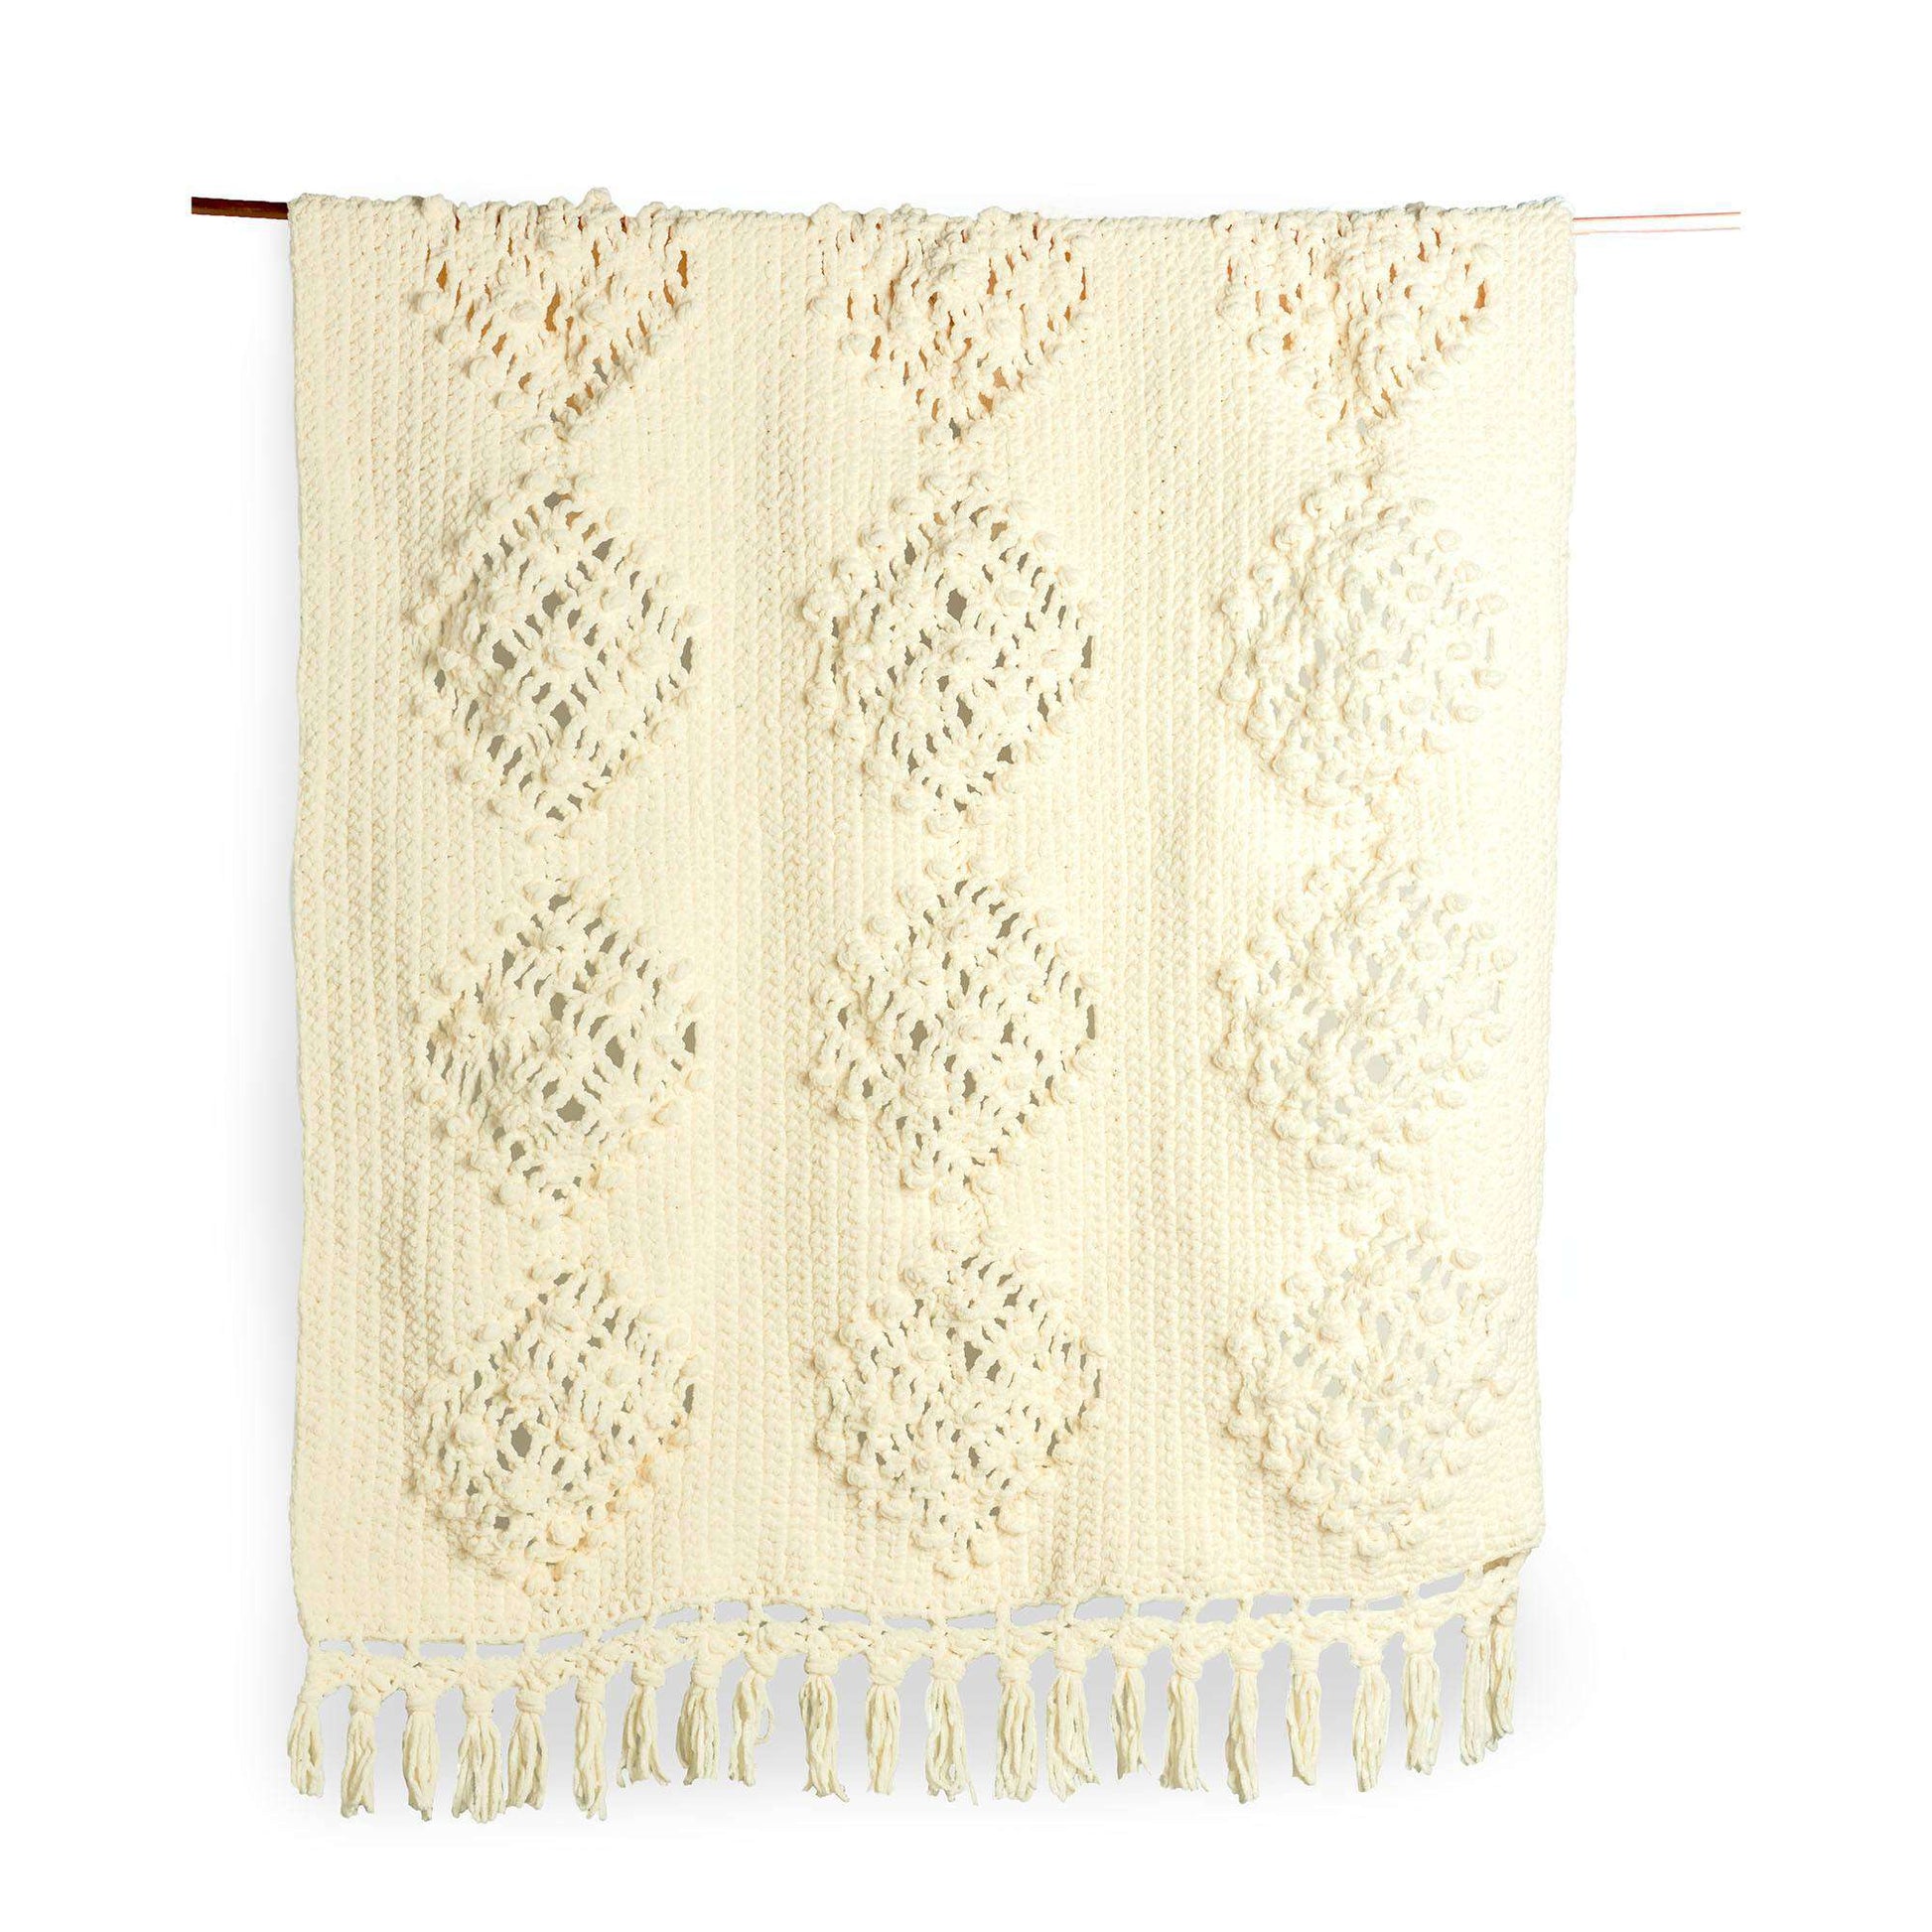 Free Bernat Knot Macrame Crochet Blanket Pattern